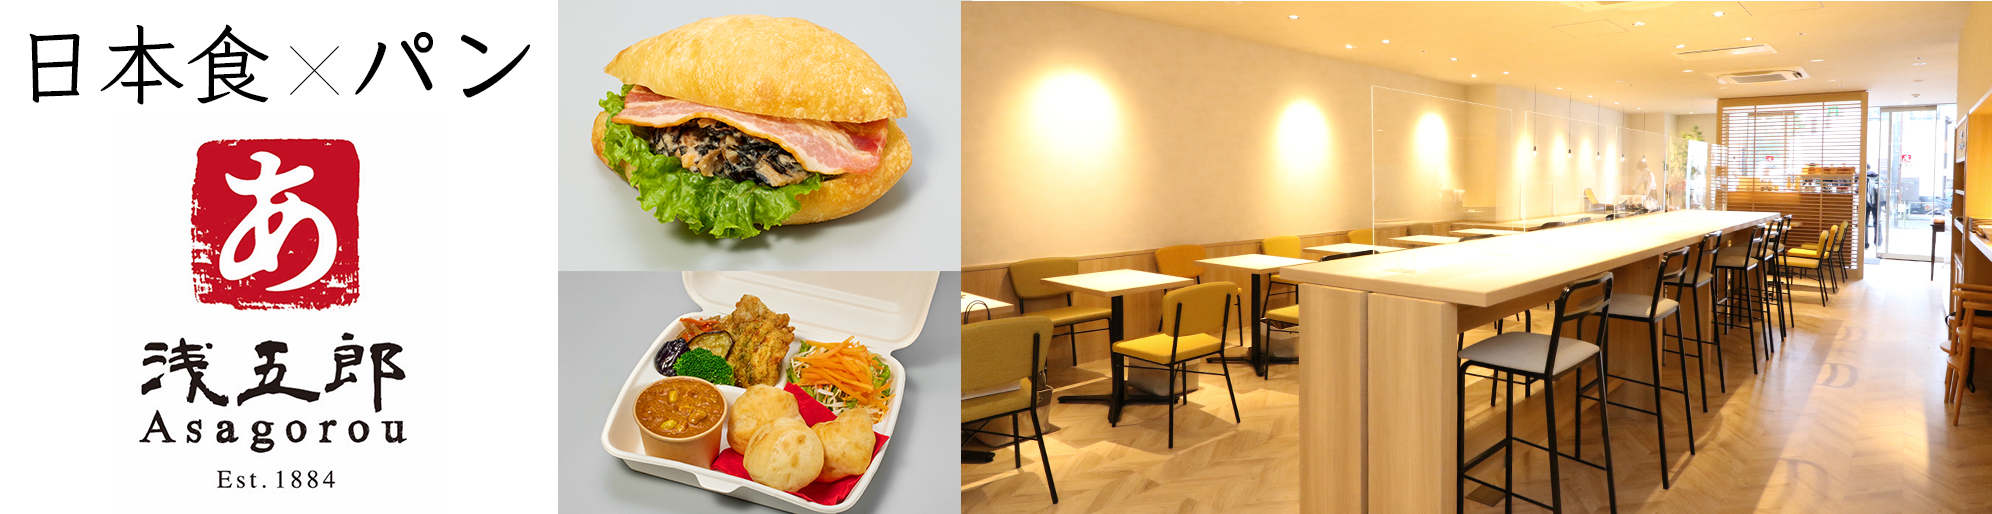 和惣菜とパンが楽しめるカフェ「浅五郎」